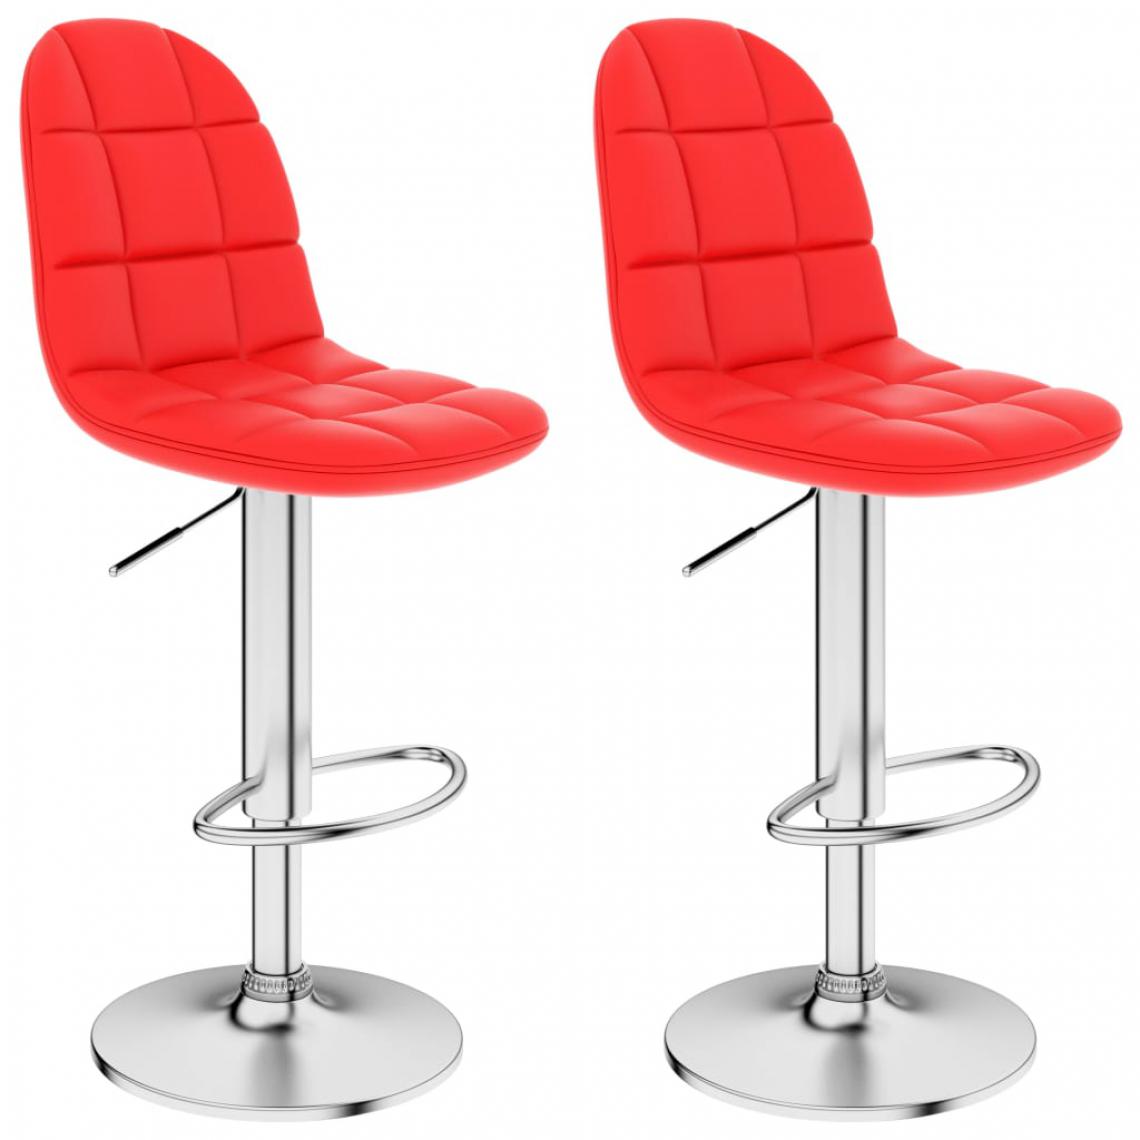 Icaverne - Moderne Fauteuils et chaises selection Kigali Tabourets de bar 2 pcs Rouge Similicuir - Tabourets